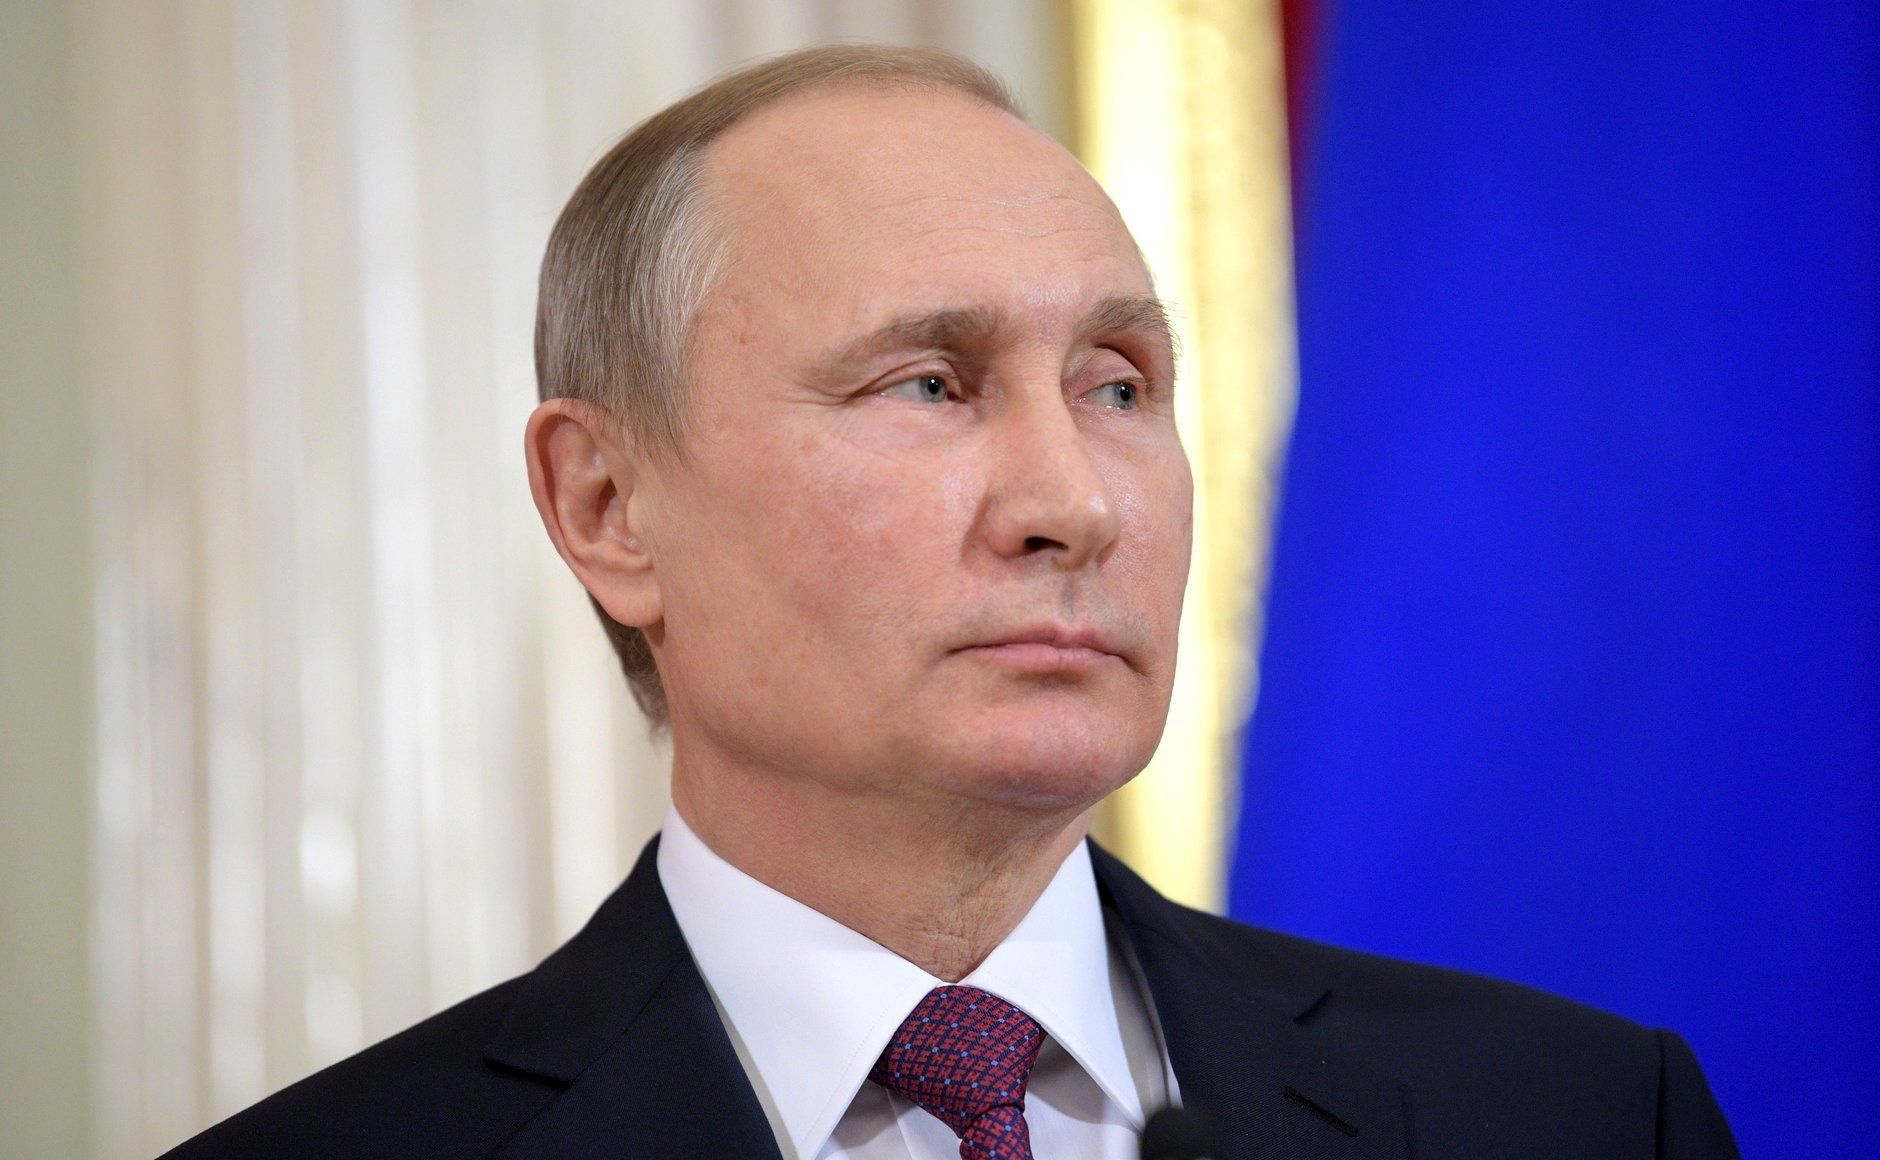 Na giełdzie nazwisk pojawia się coraz więcej osób mogących zastąpić Władimira Putina.